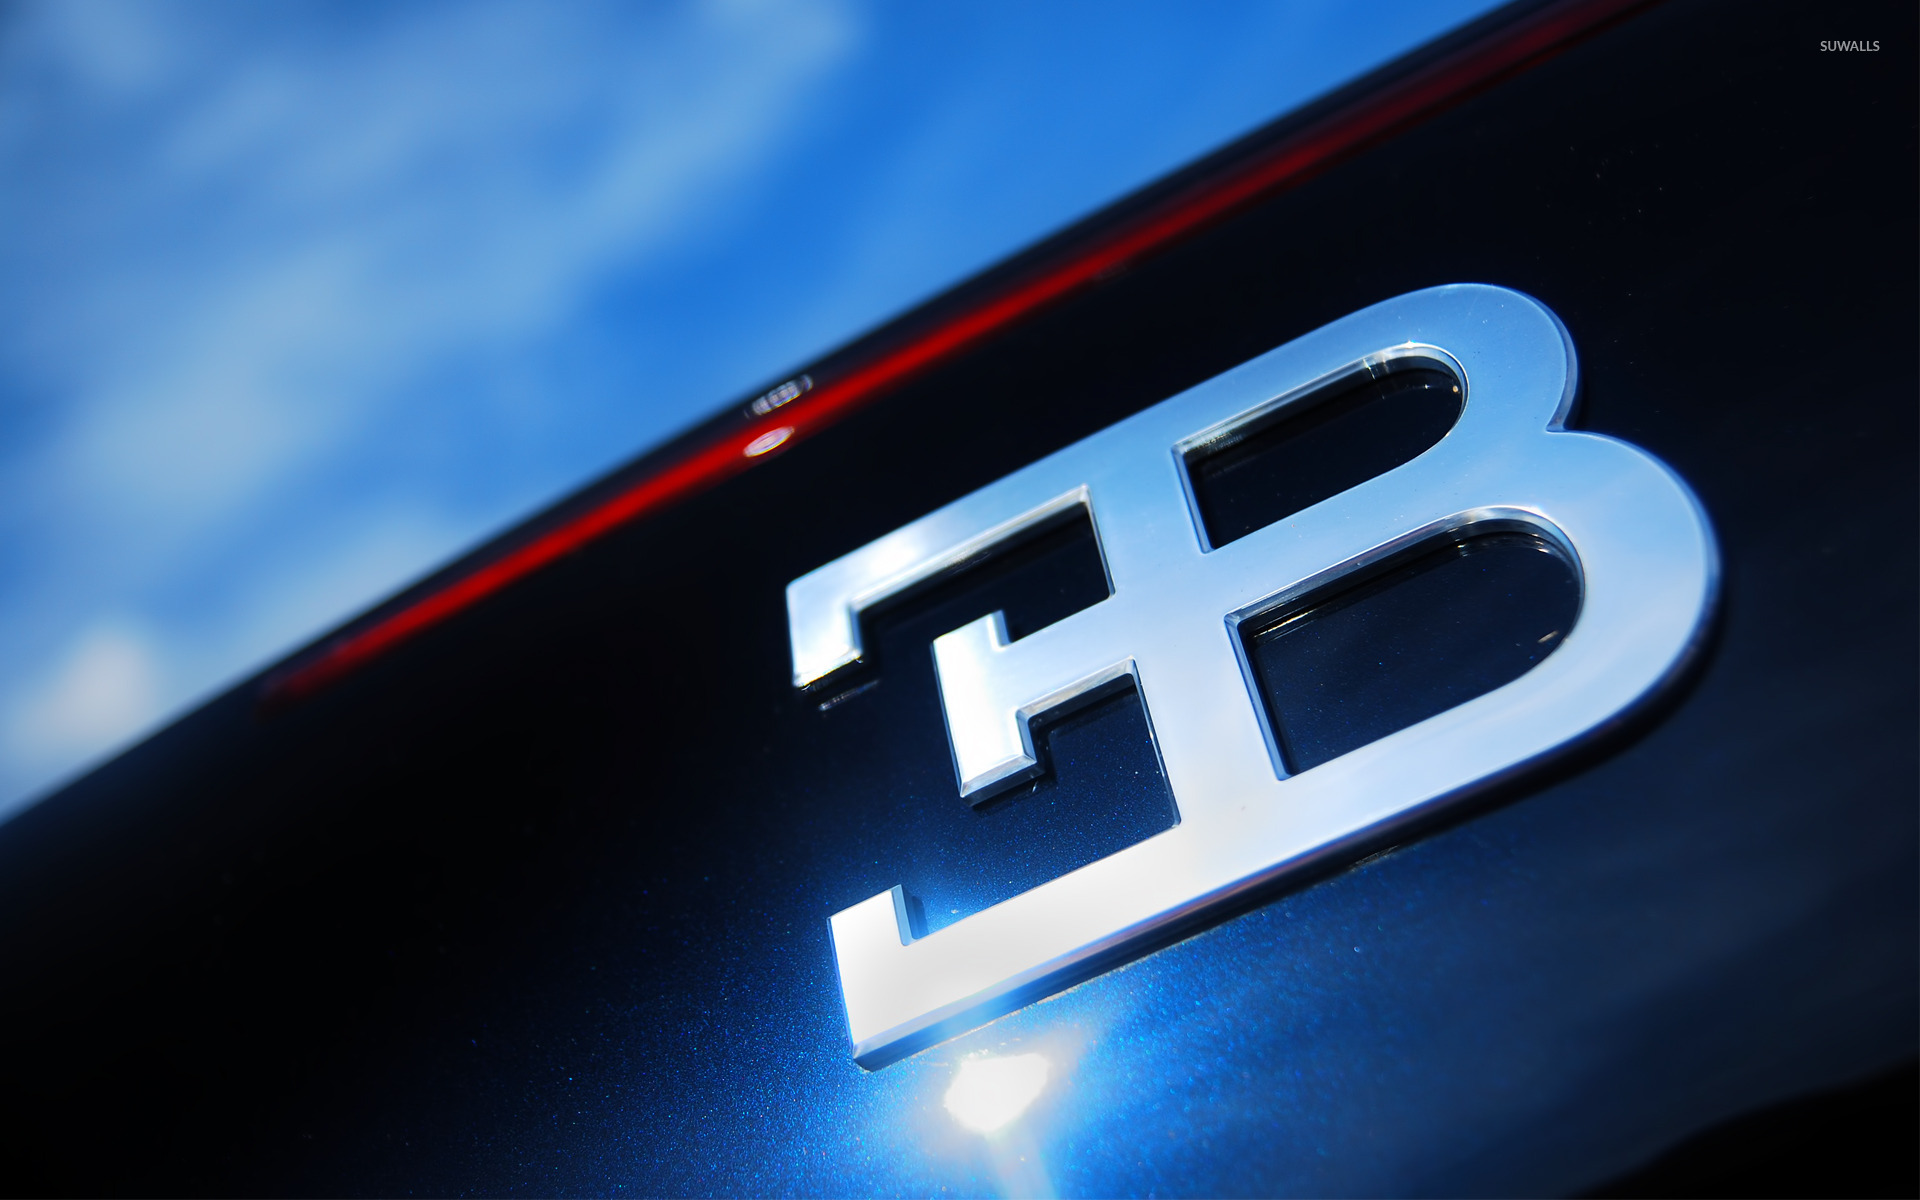 Bugatti Symbol